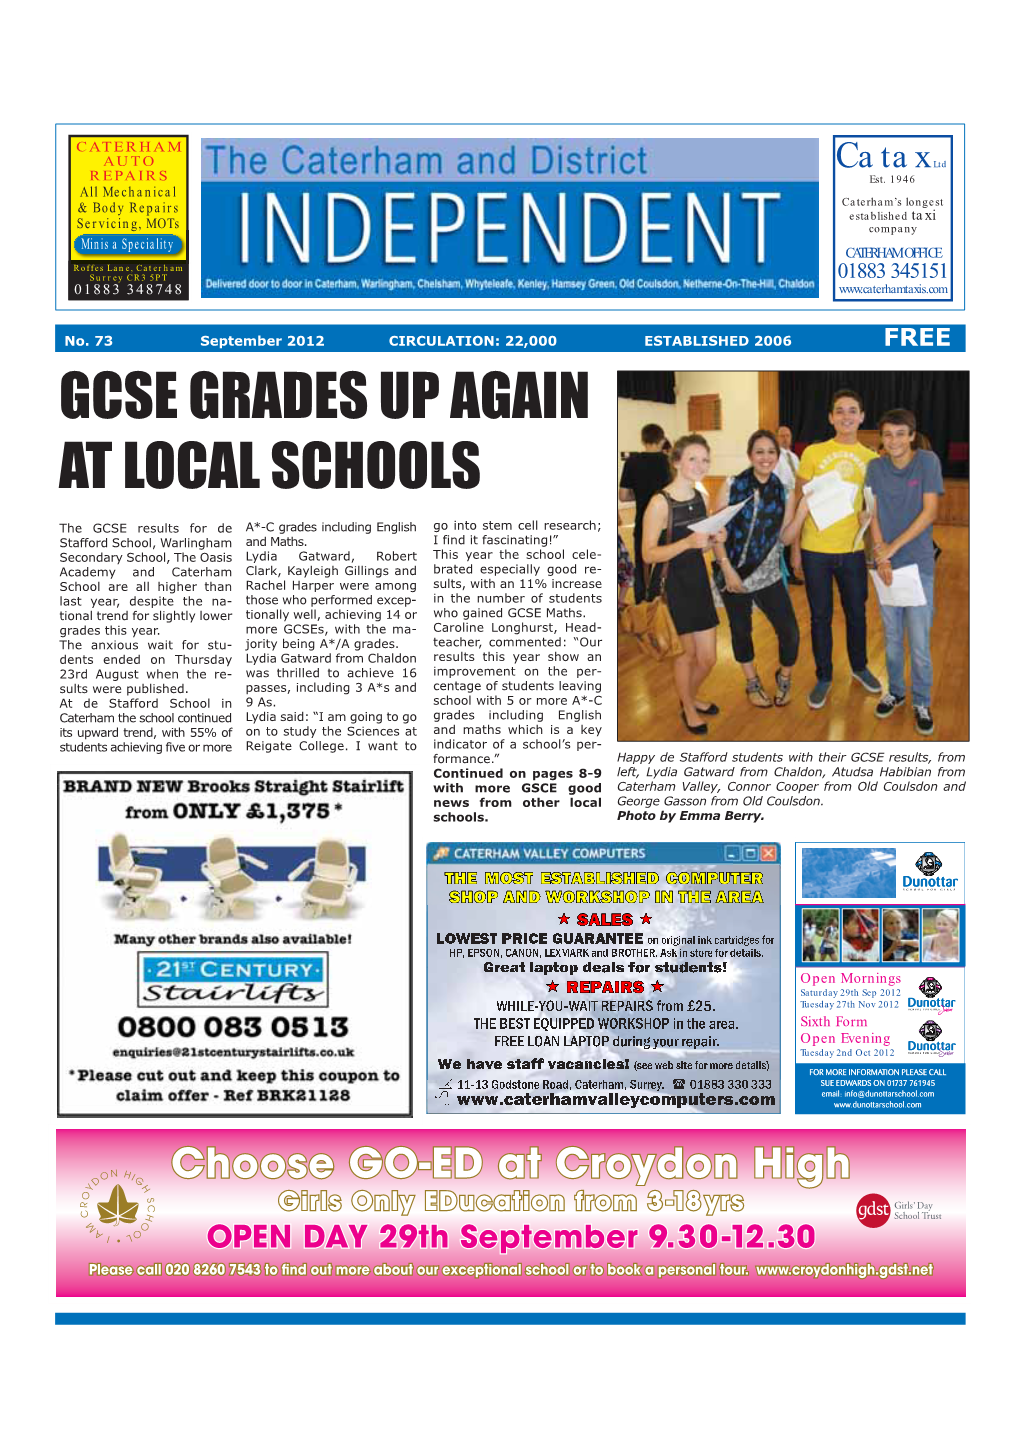 Gcse Grades up Again at Local Schools